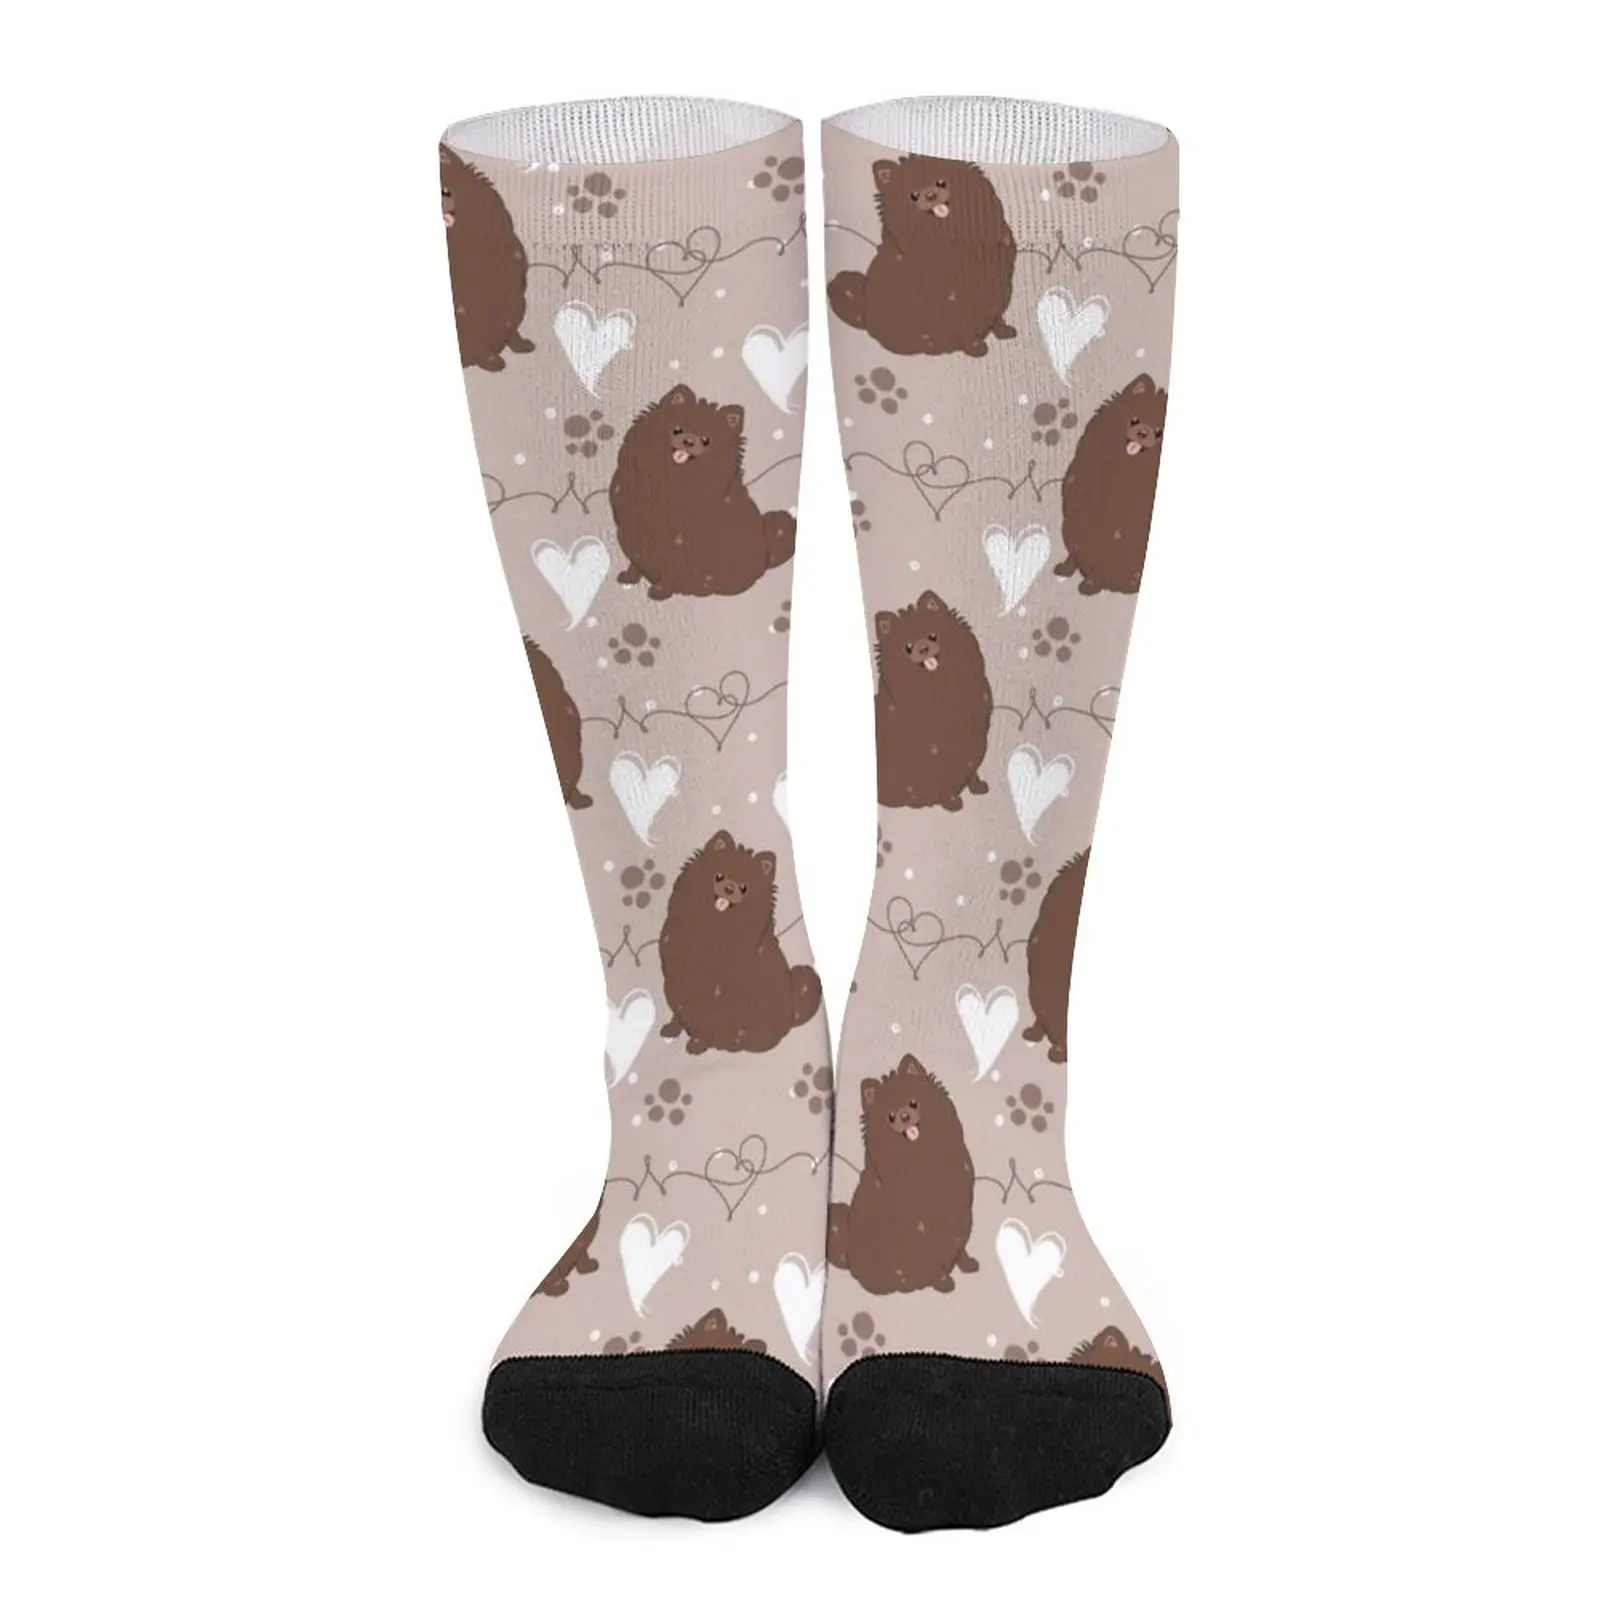 LOVE Chocolate Pomeranian Socks Funny socks woman non-slip soccer stockings men gifts